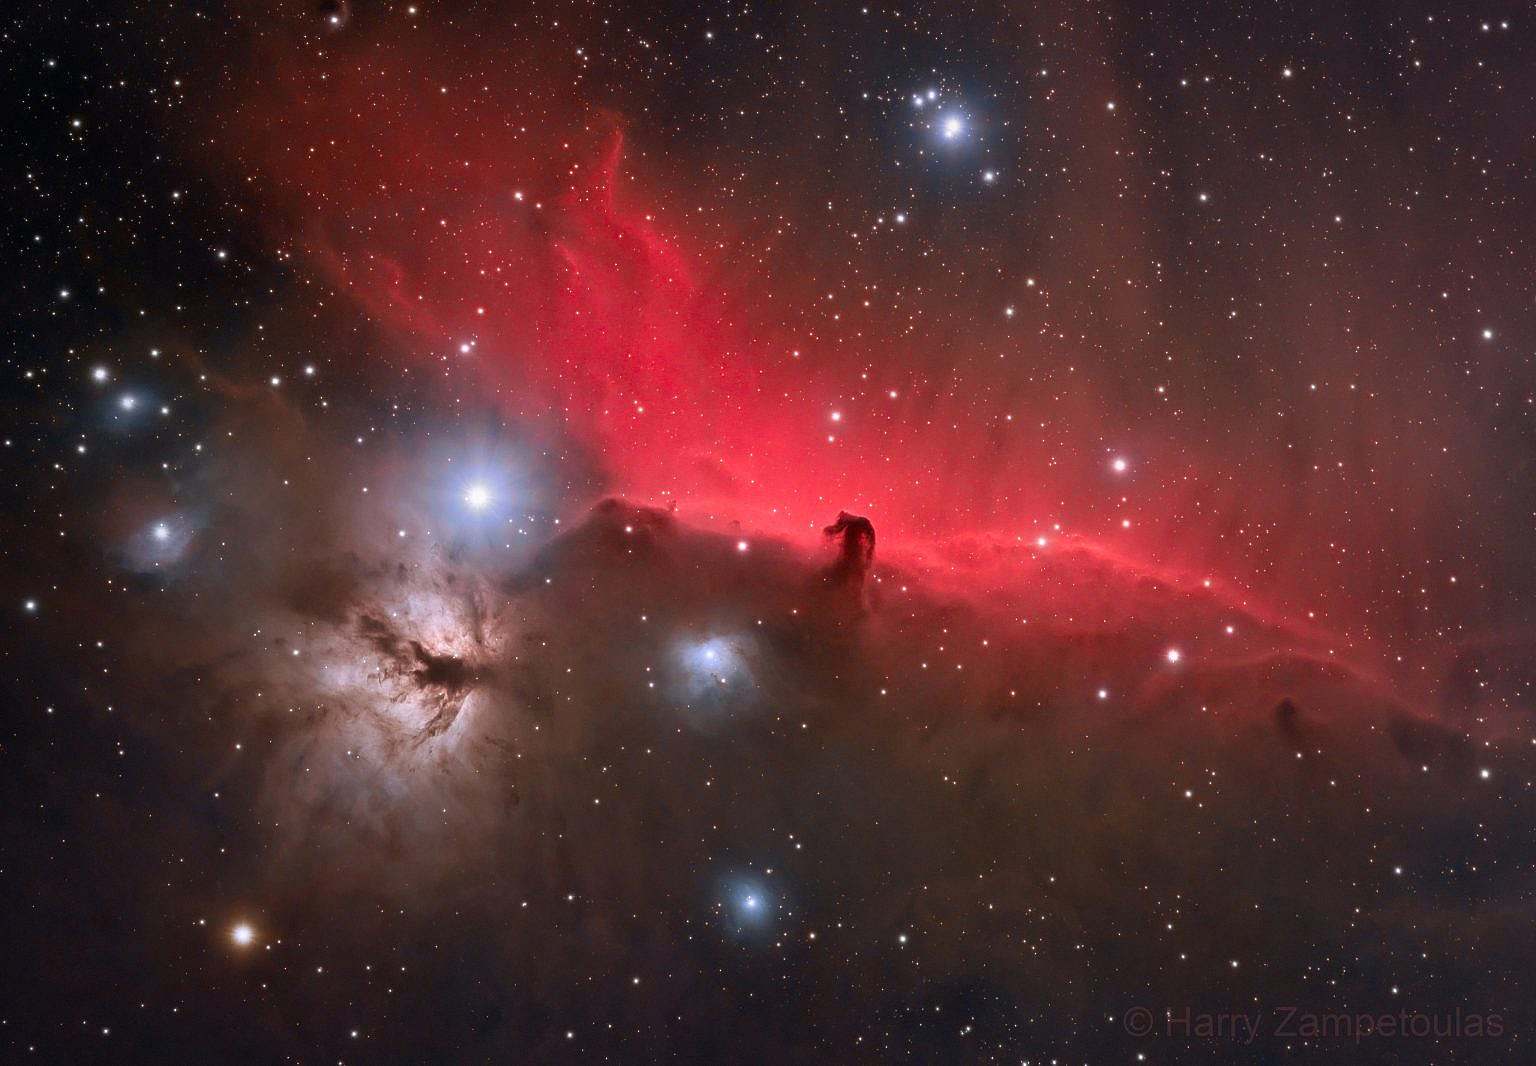 horsehead-and-flame-nebula-in-halrgb-1536x1066 Horsehead and Flame Nebula in HaLRGB - Αστροφωτογραφία - Ρόδος, Ελλάδα 